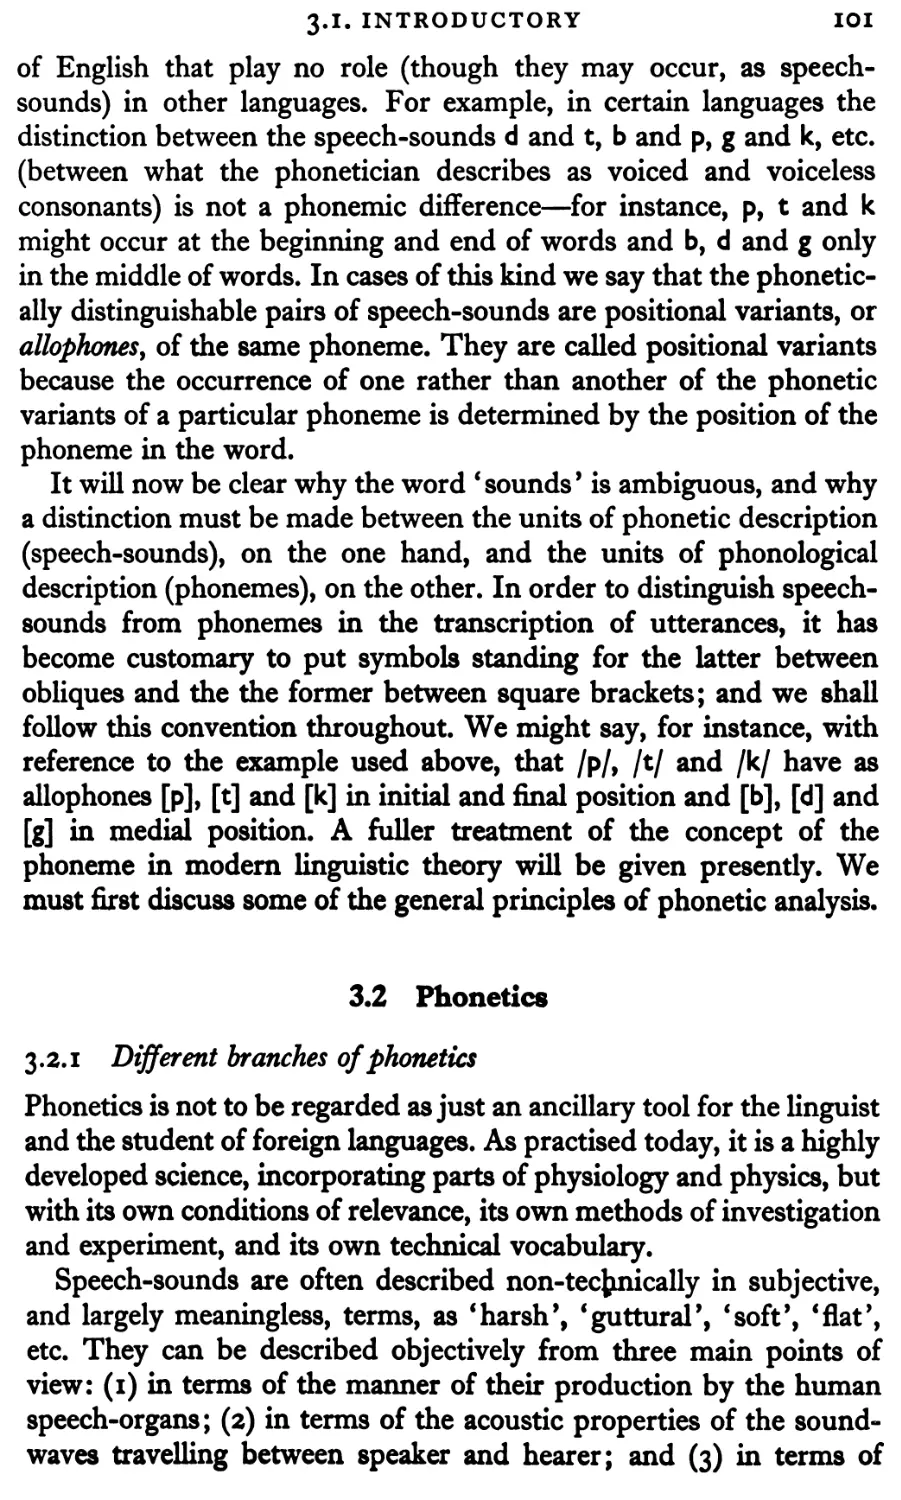 3.2 Phonetics